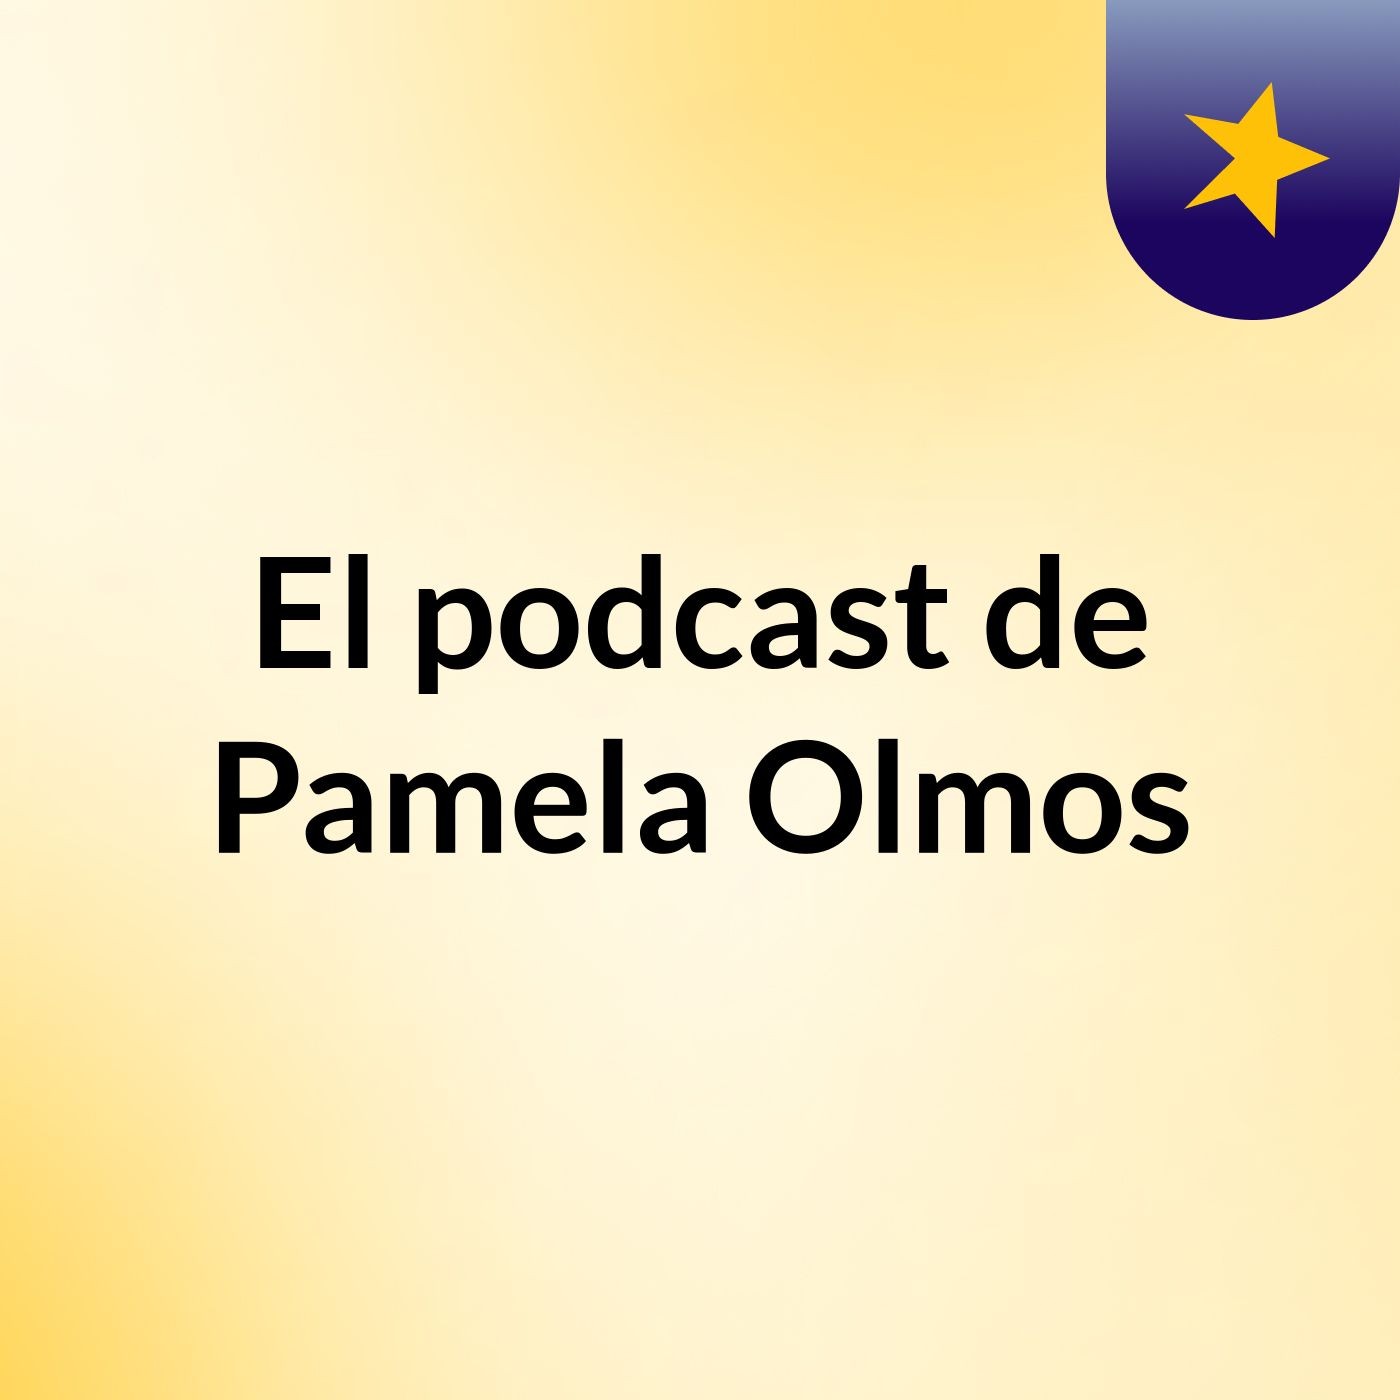 El podcast de Pamela Olmos